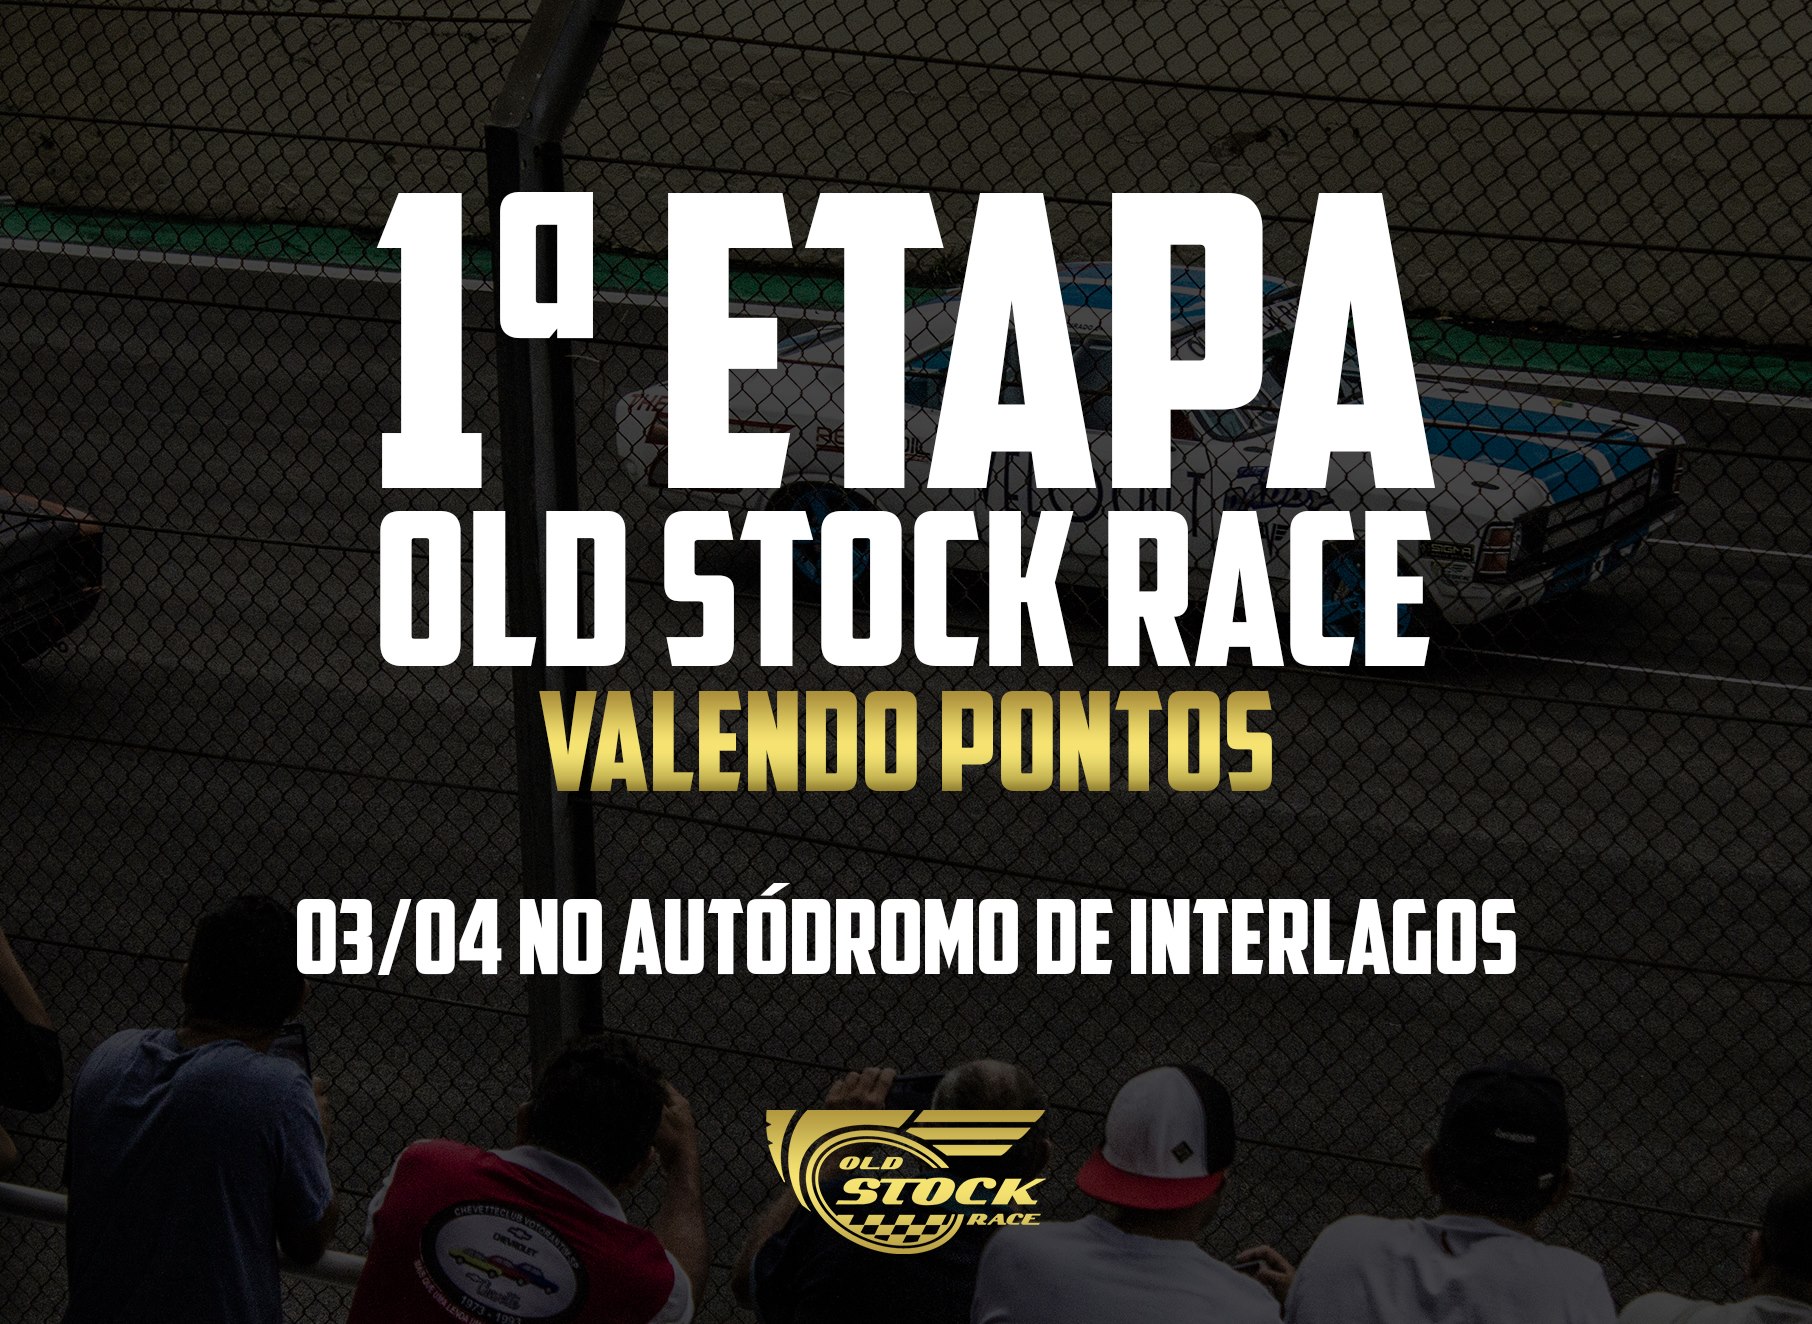 Old Stock Race 2016 - Segunda Prova em Interlagos - 03/04/2016 - Ação Solidária - Instituto Ingo Hoffmann